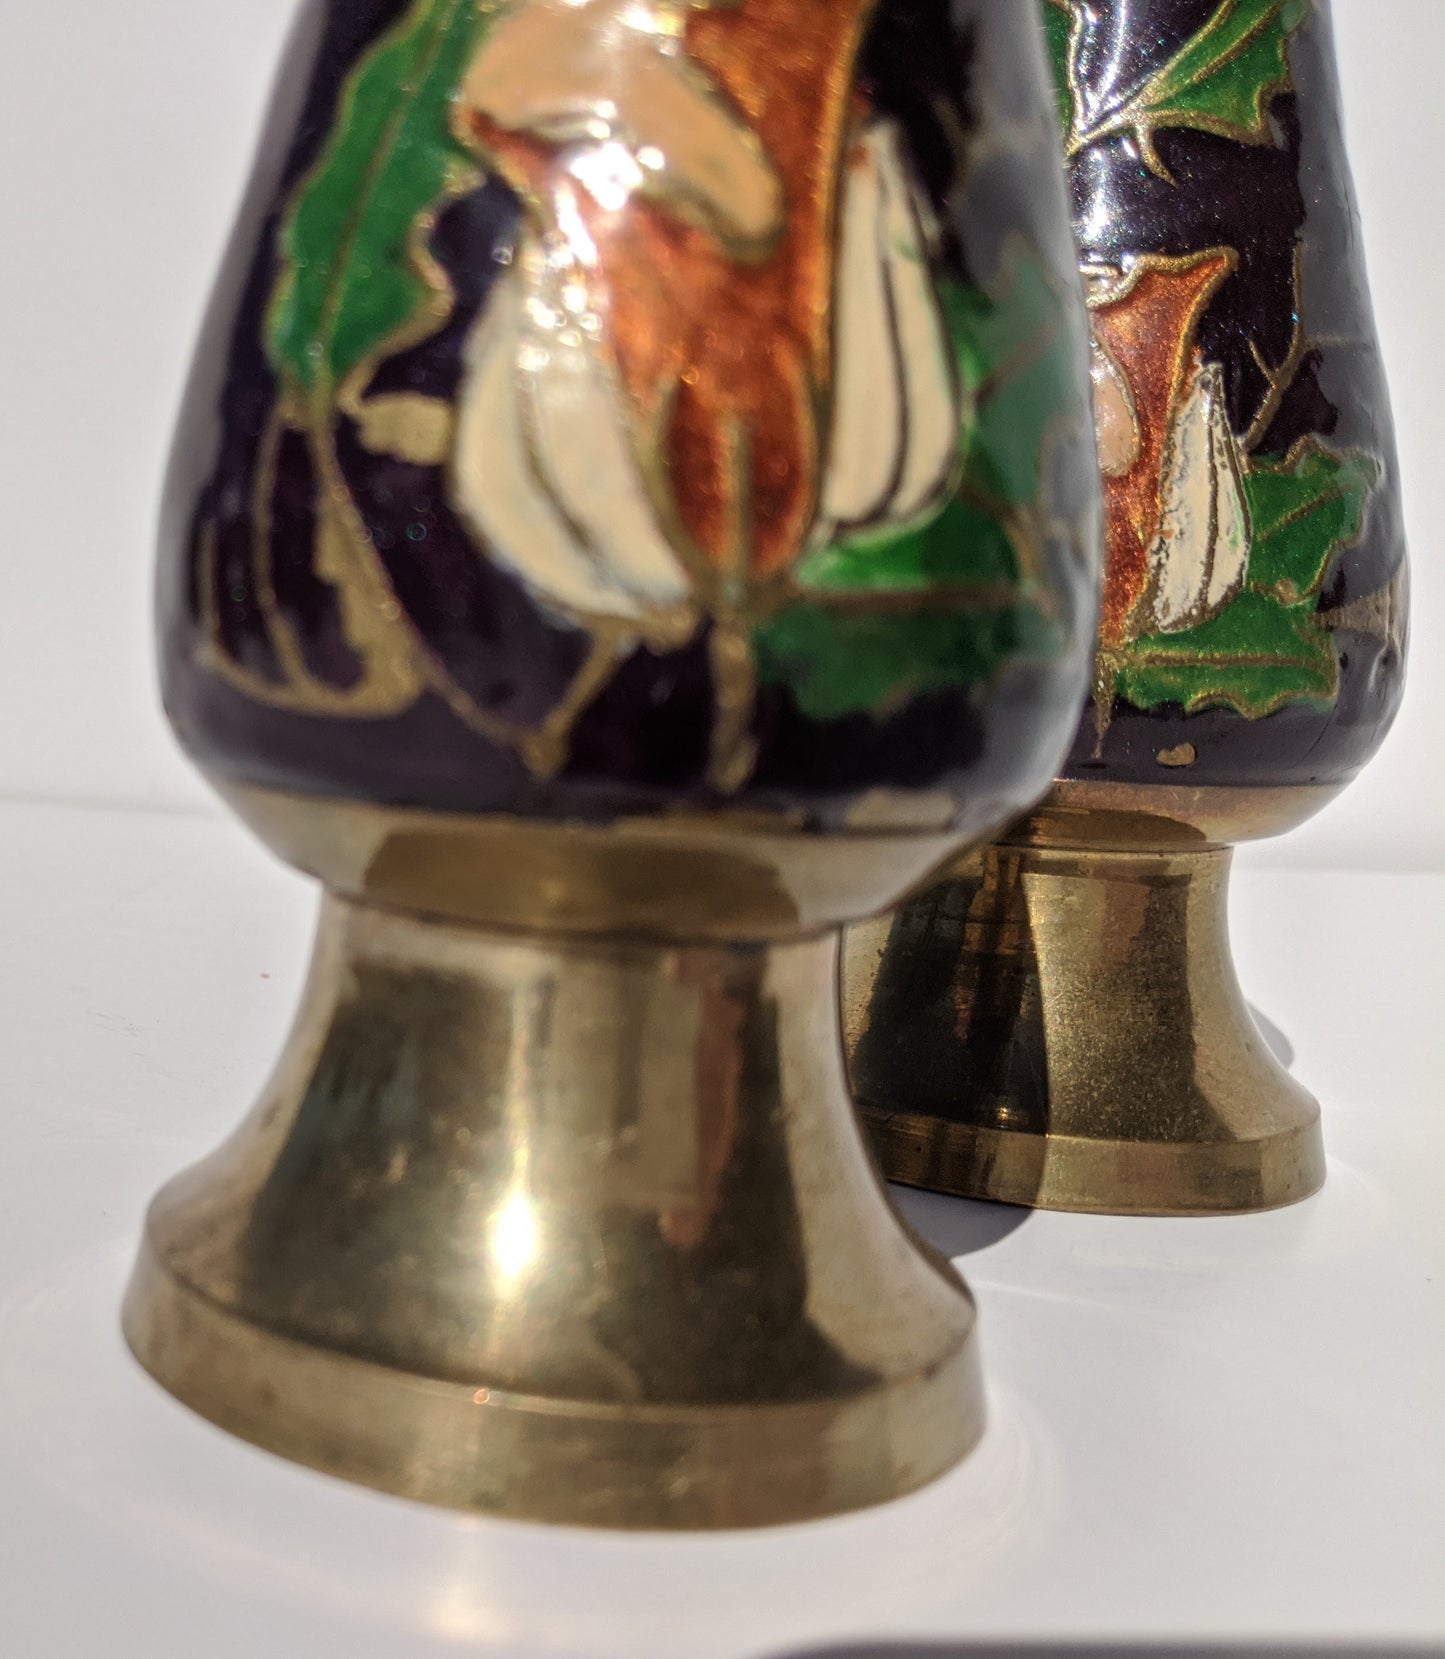 Brass Enameled Bud Vases (2)